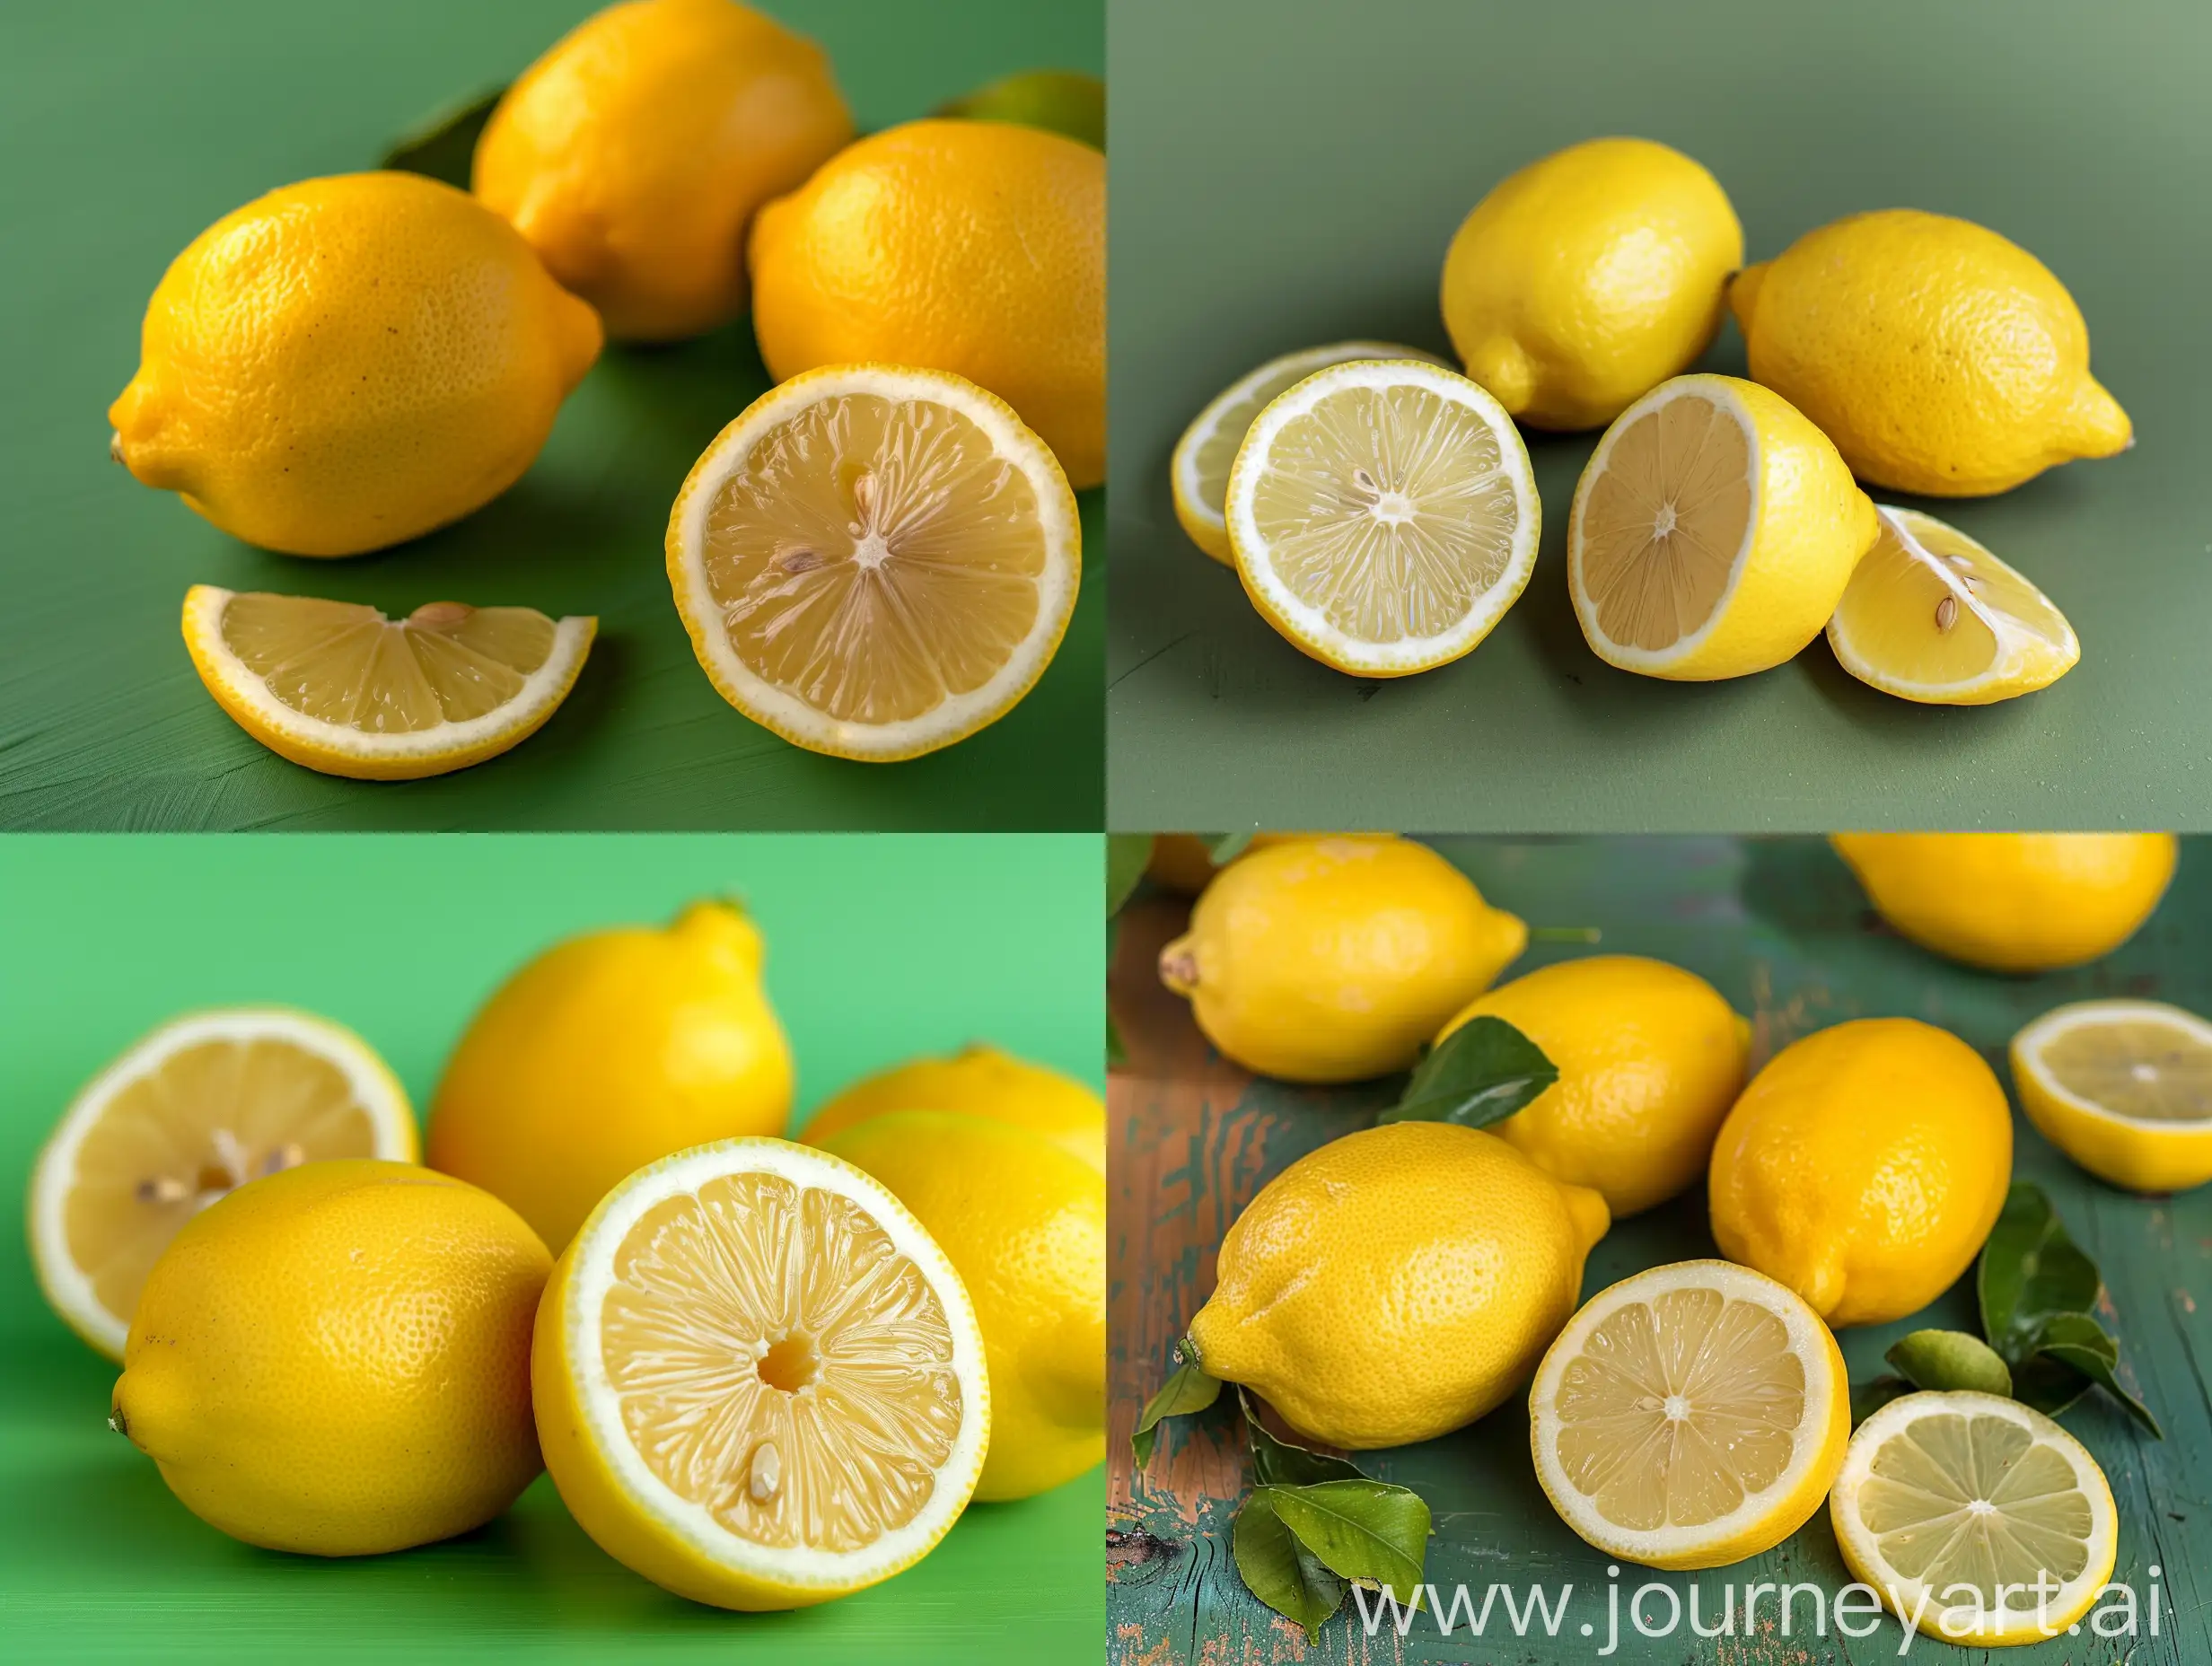 Vibrant-Lemons-on-Green-Background-Fresh-Citrus-Fruits-in-Natural-Setting